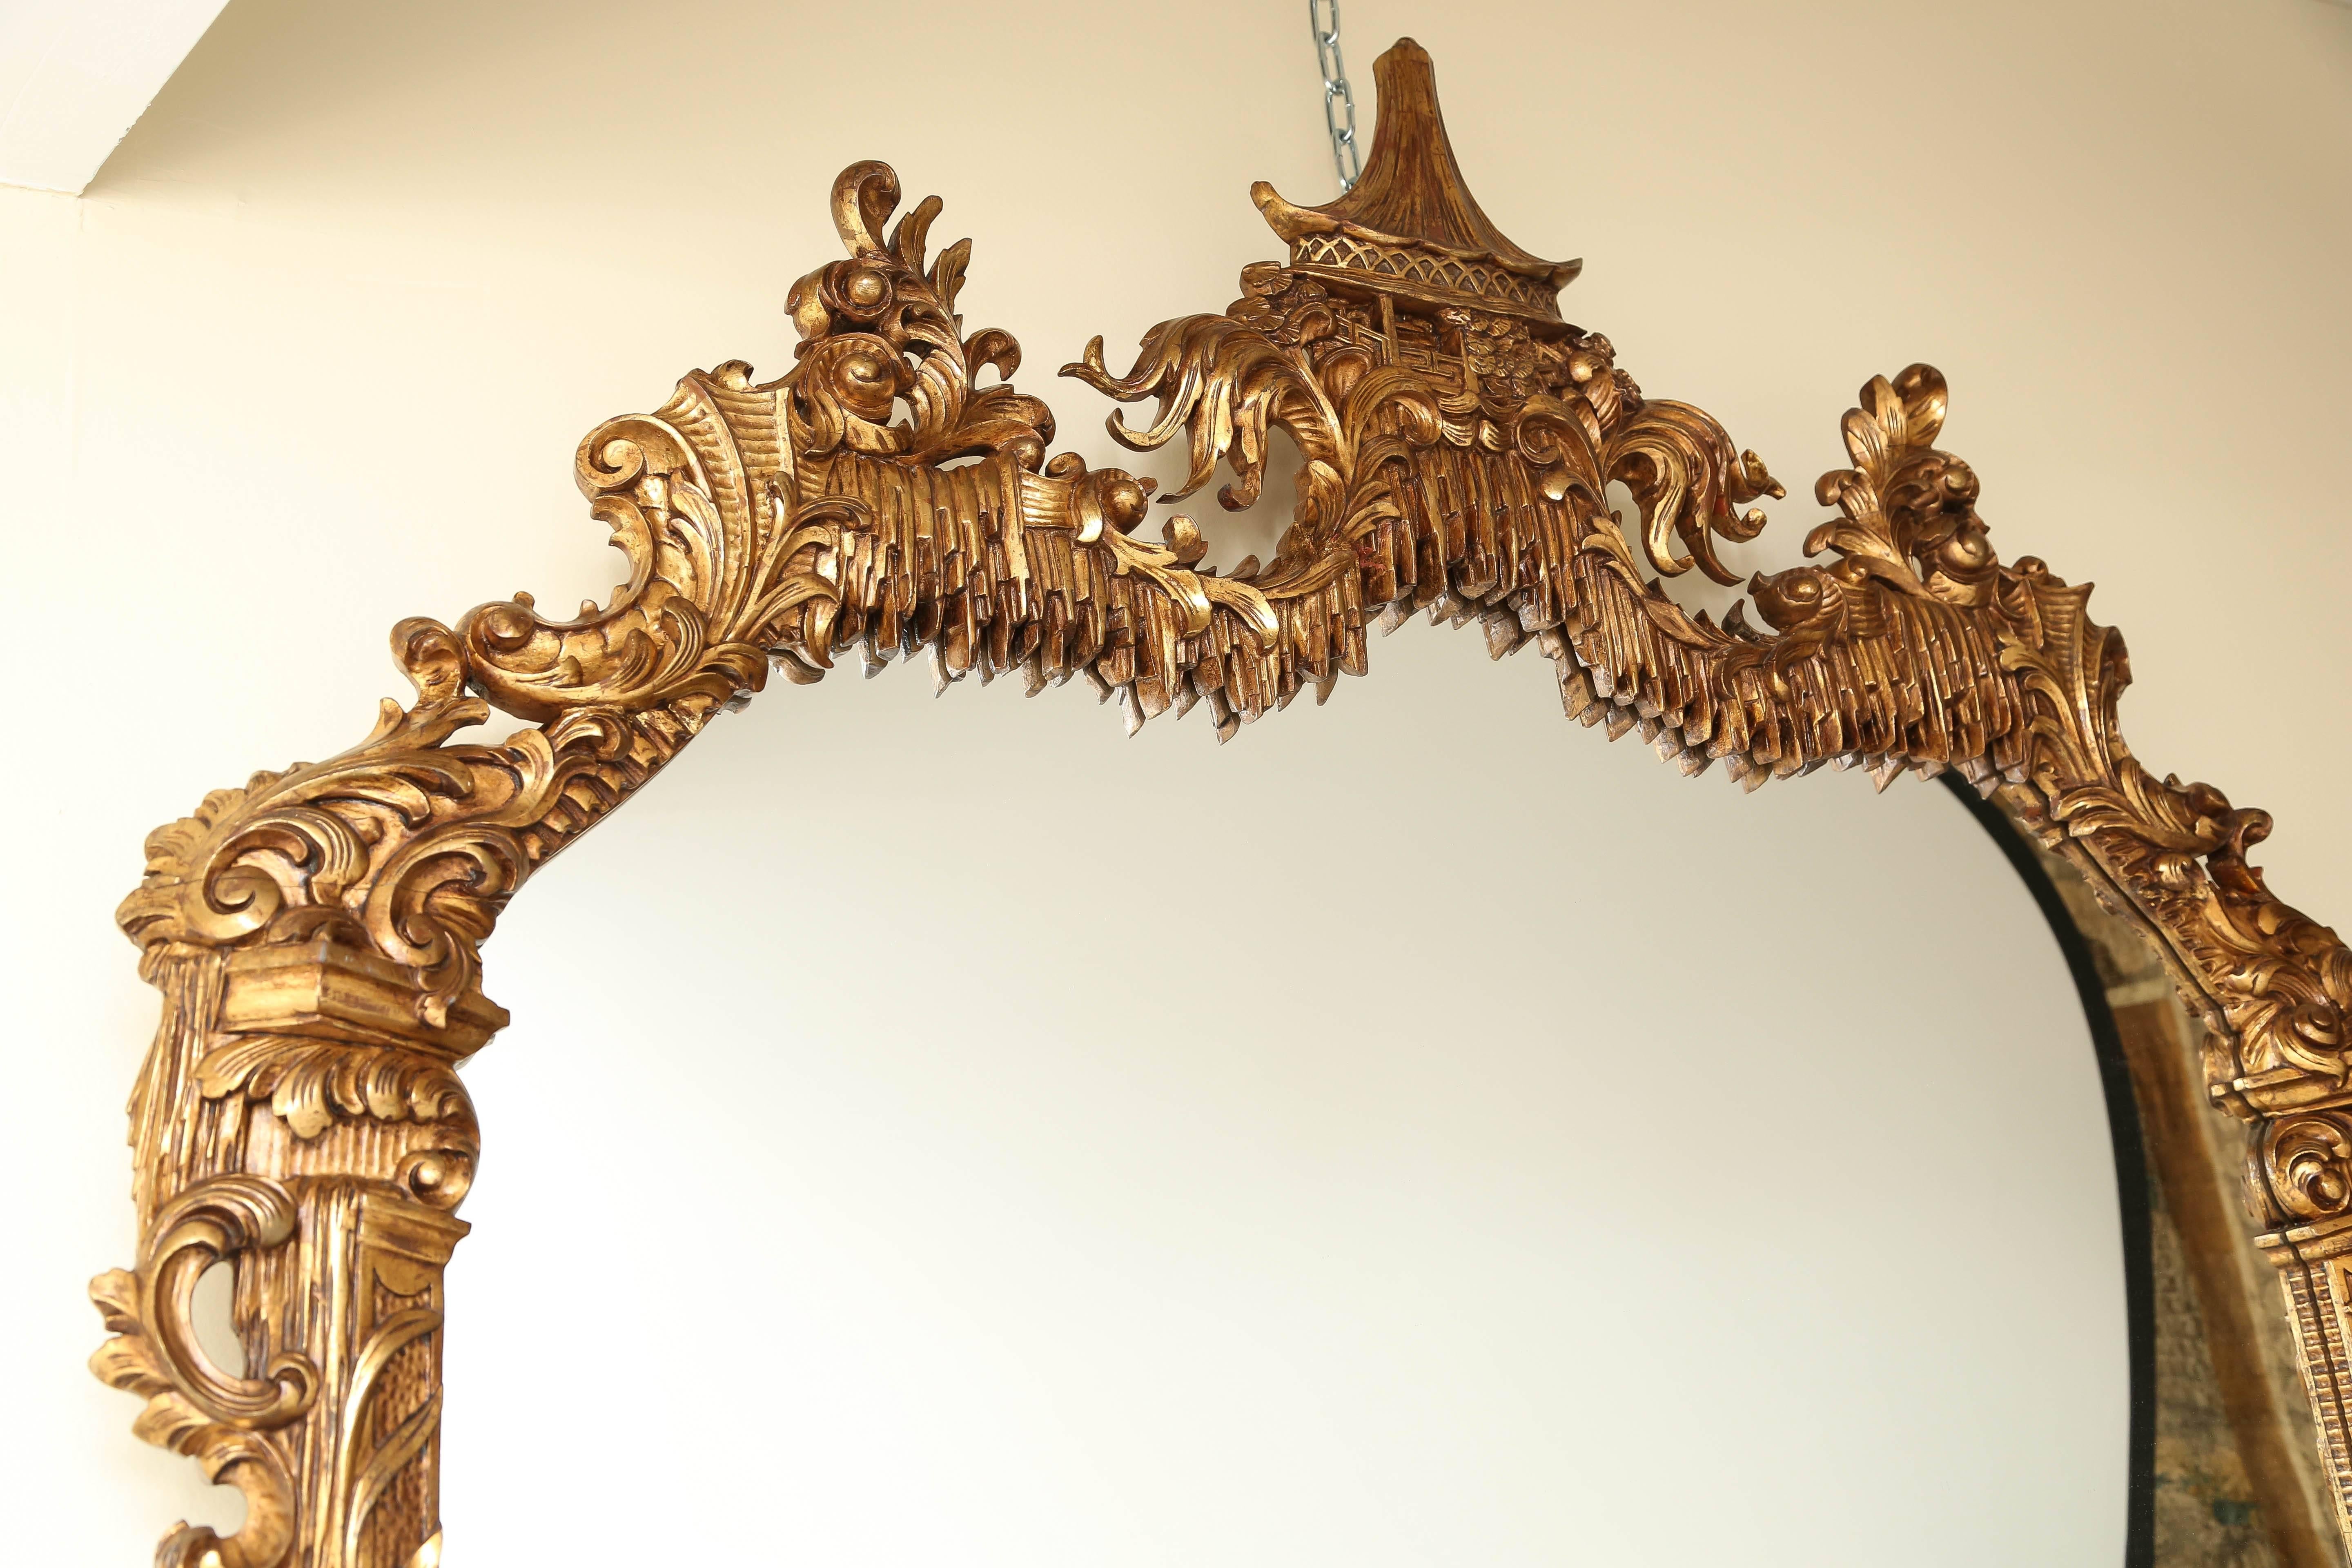 Prächtiger Spiegel aus vergoldetem Holz. Im chinesischen Chippendale-Stil. Geschmückt mit Akanthusblättern und eleganten Schnitzereien. Gekrönt von einem Pavillon im Pagodenstil, der in einer 